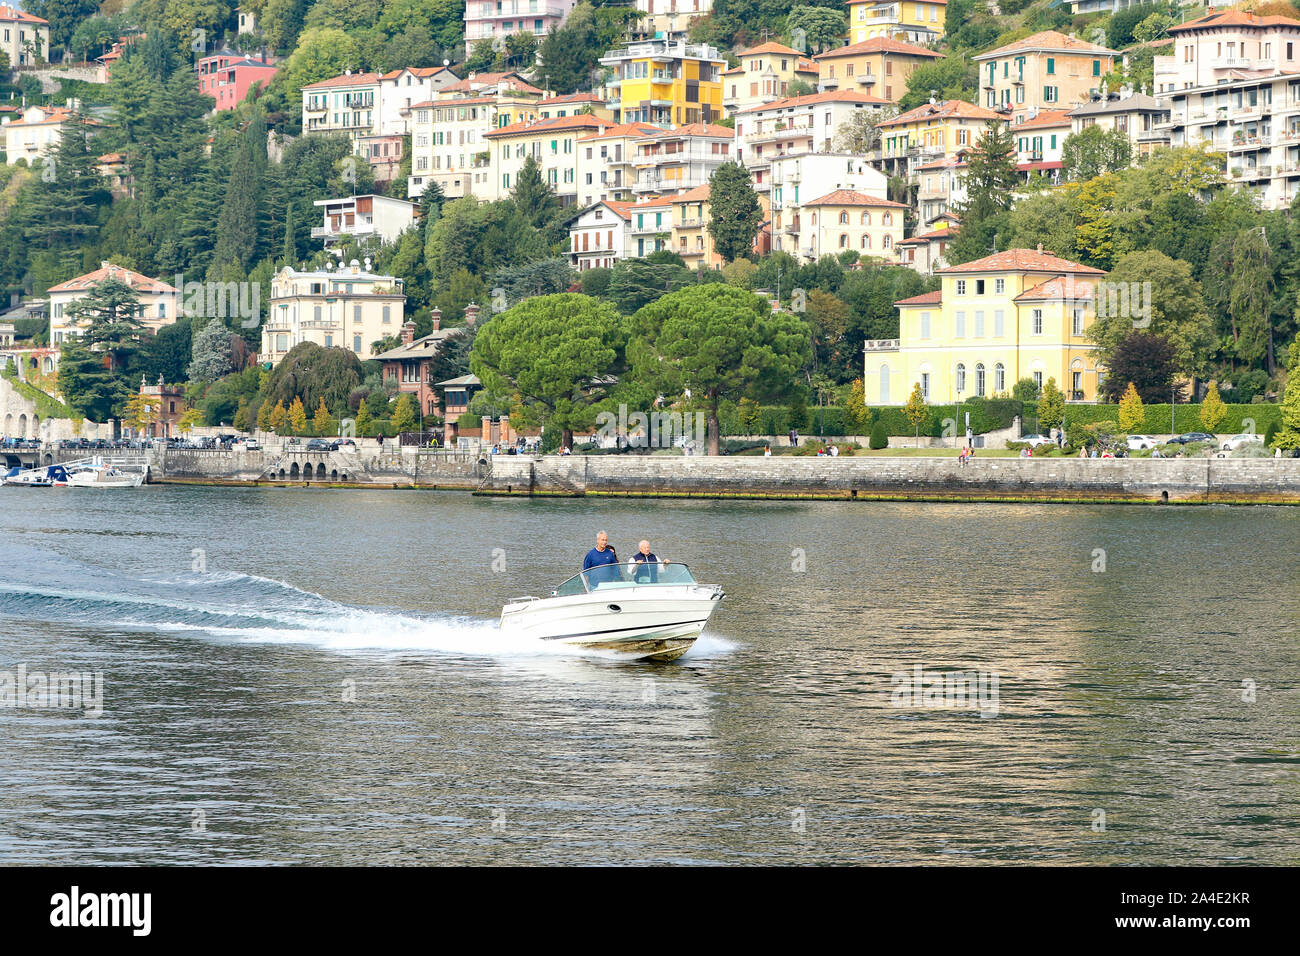 Viaggiare il lago di Como Lombardia Como Italia laghi italiani architettura barche Visita Lombardia destinazione turistica Foto Stock